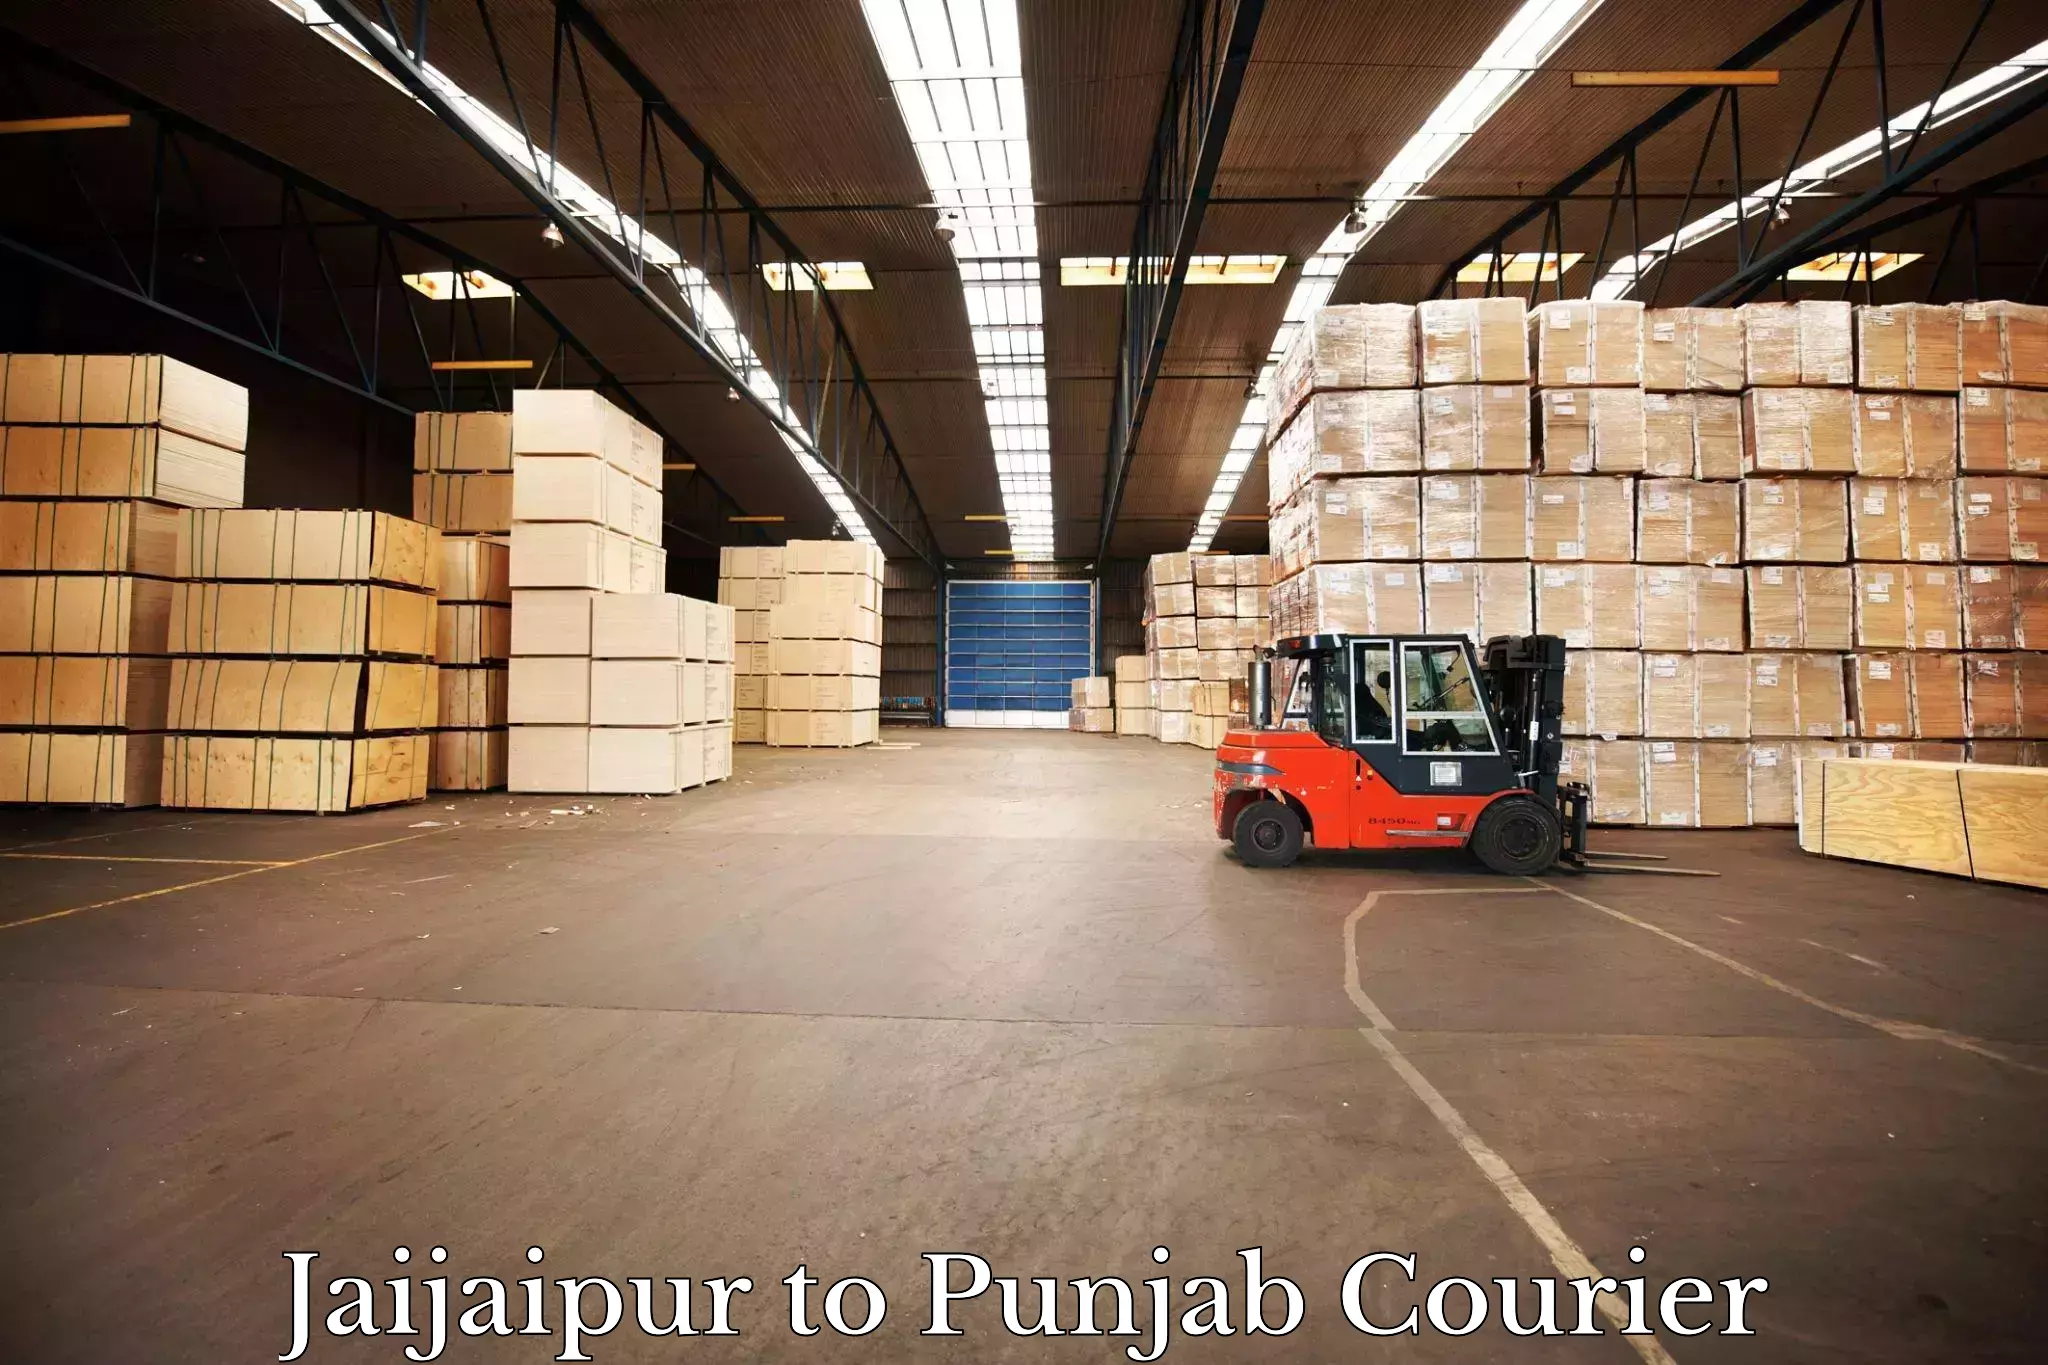 Nationwide shipping coverage Jaijaipur to Punjab